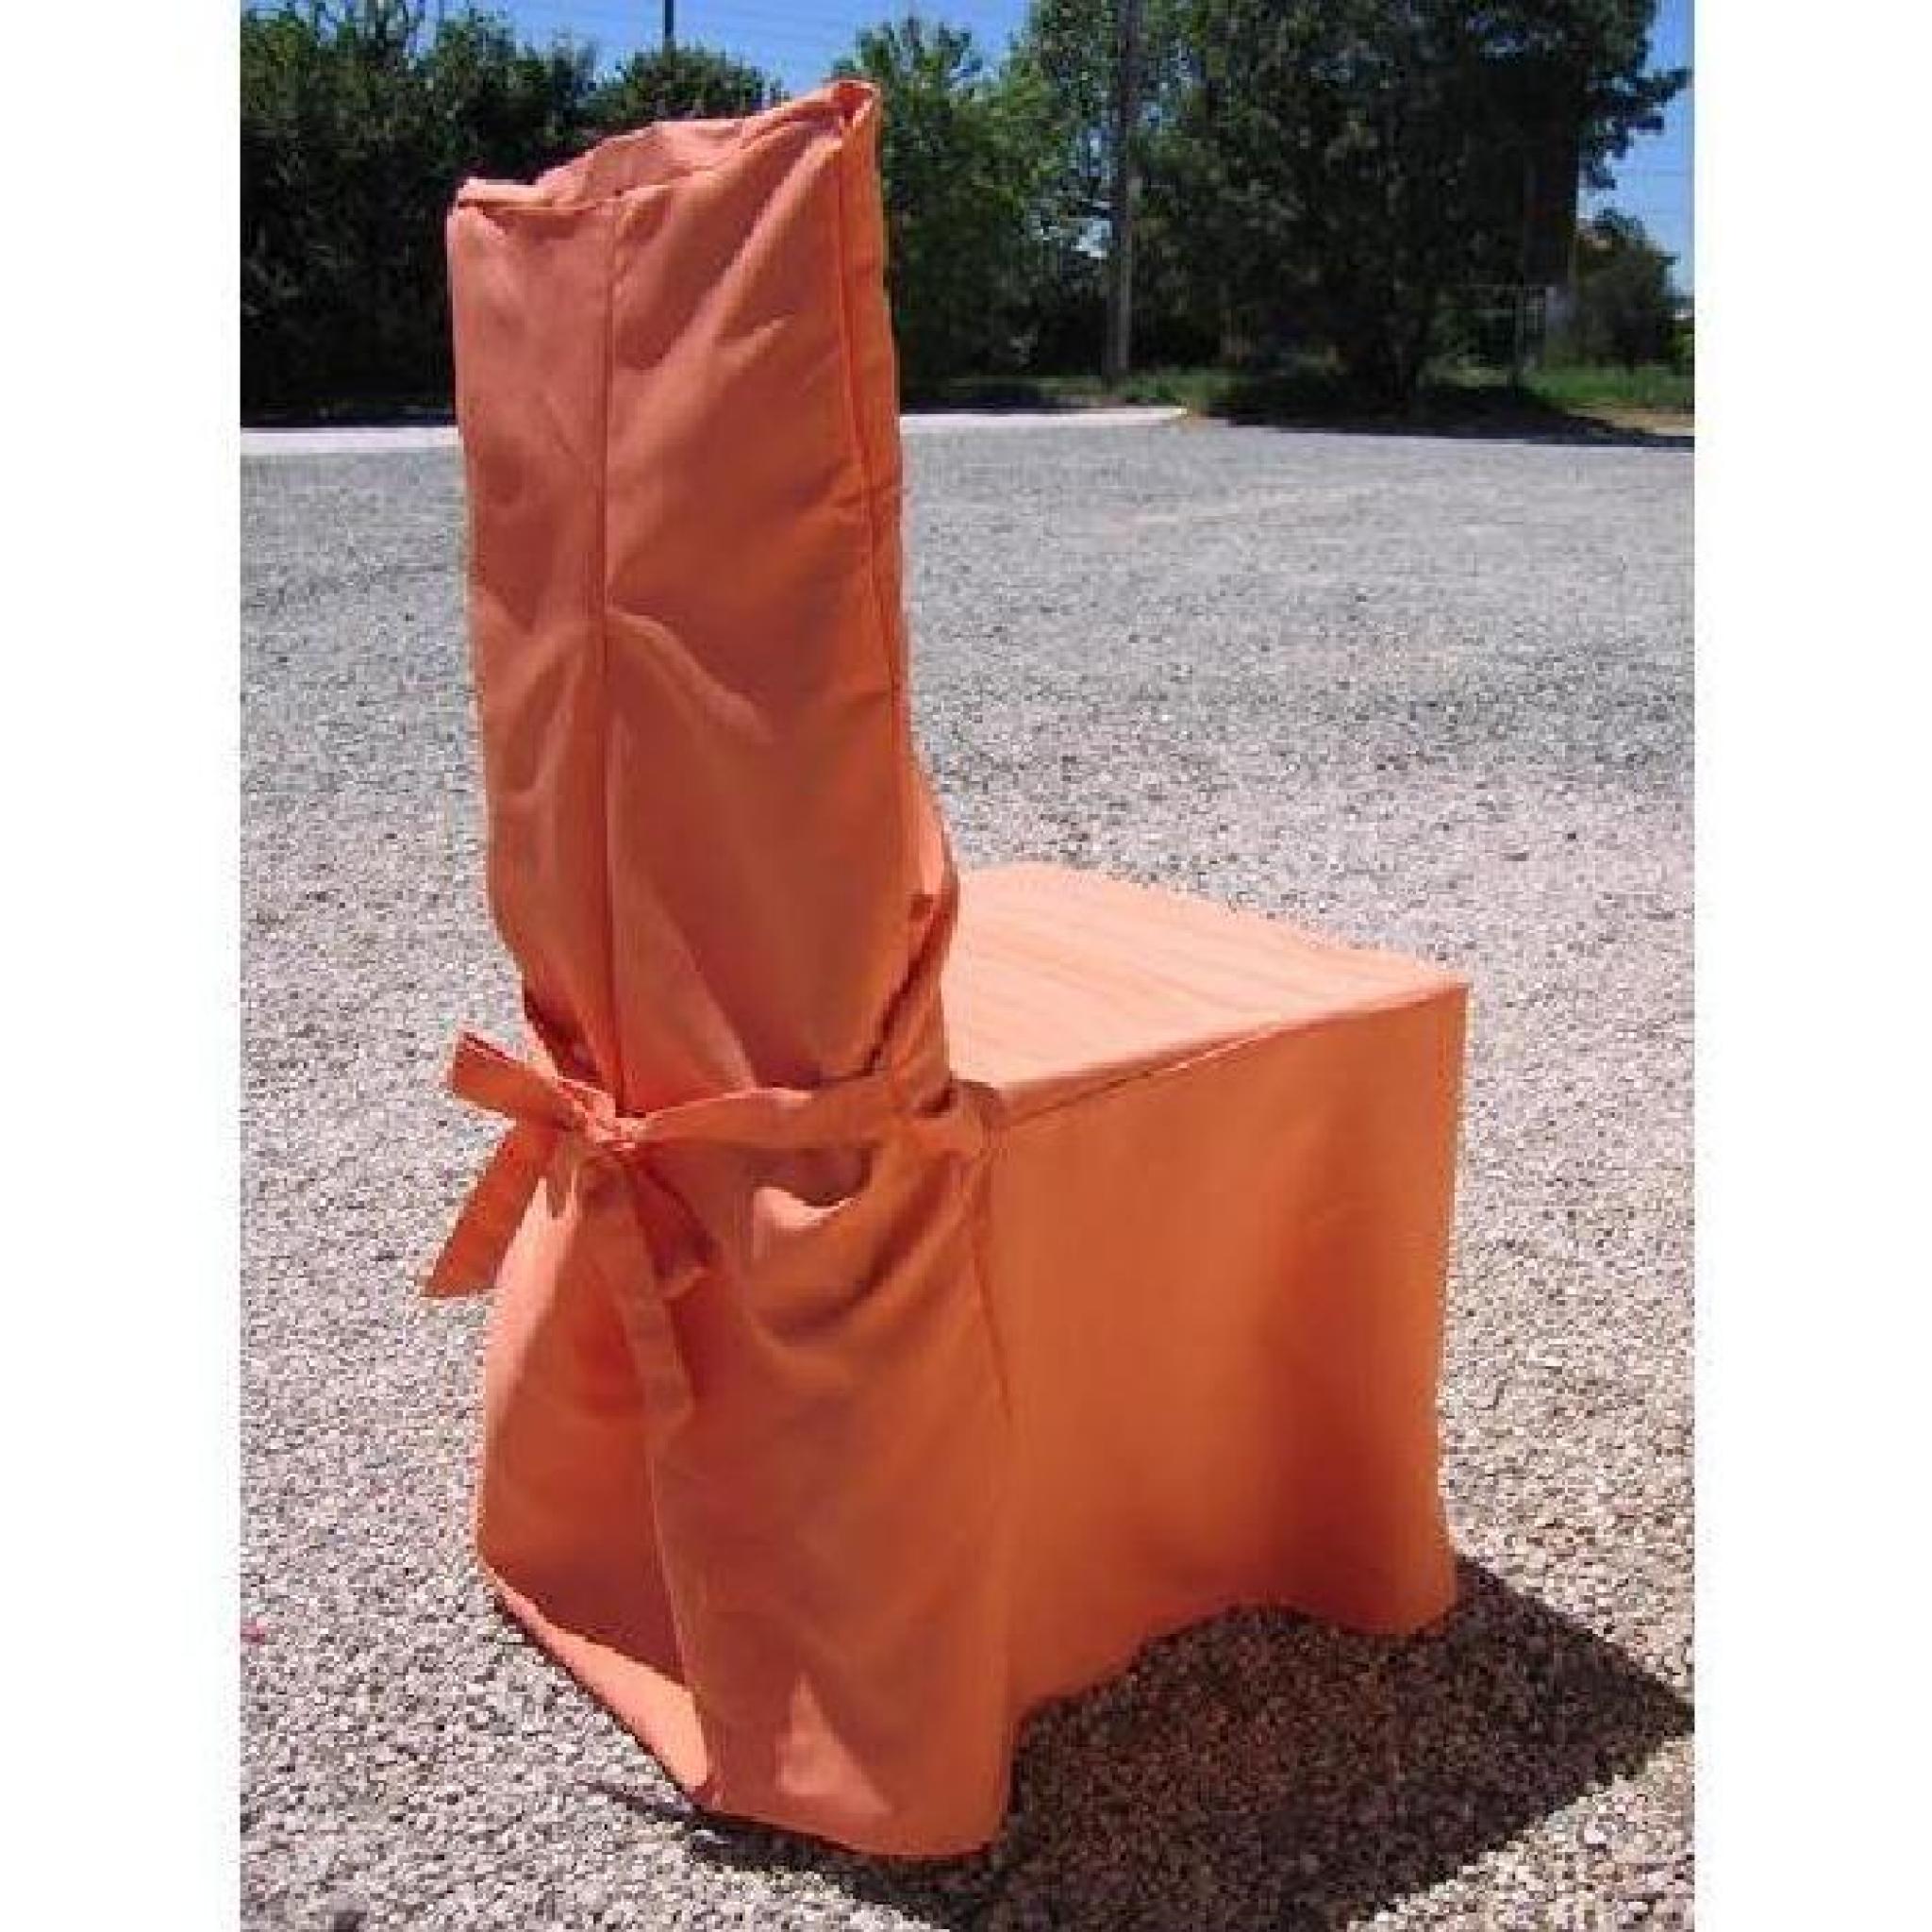 1 housse de chaise orange